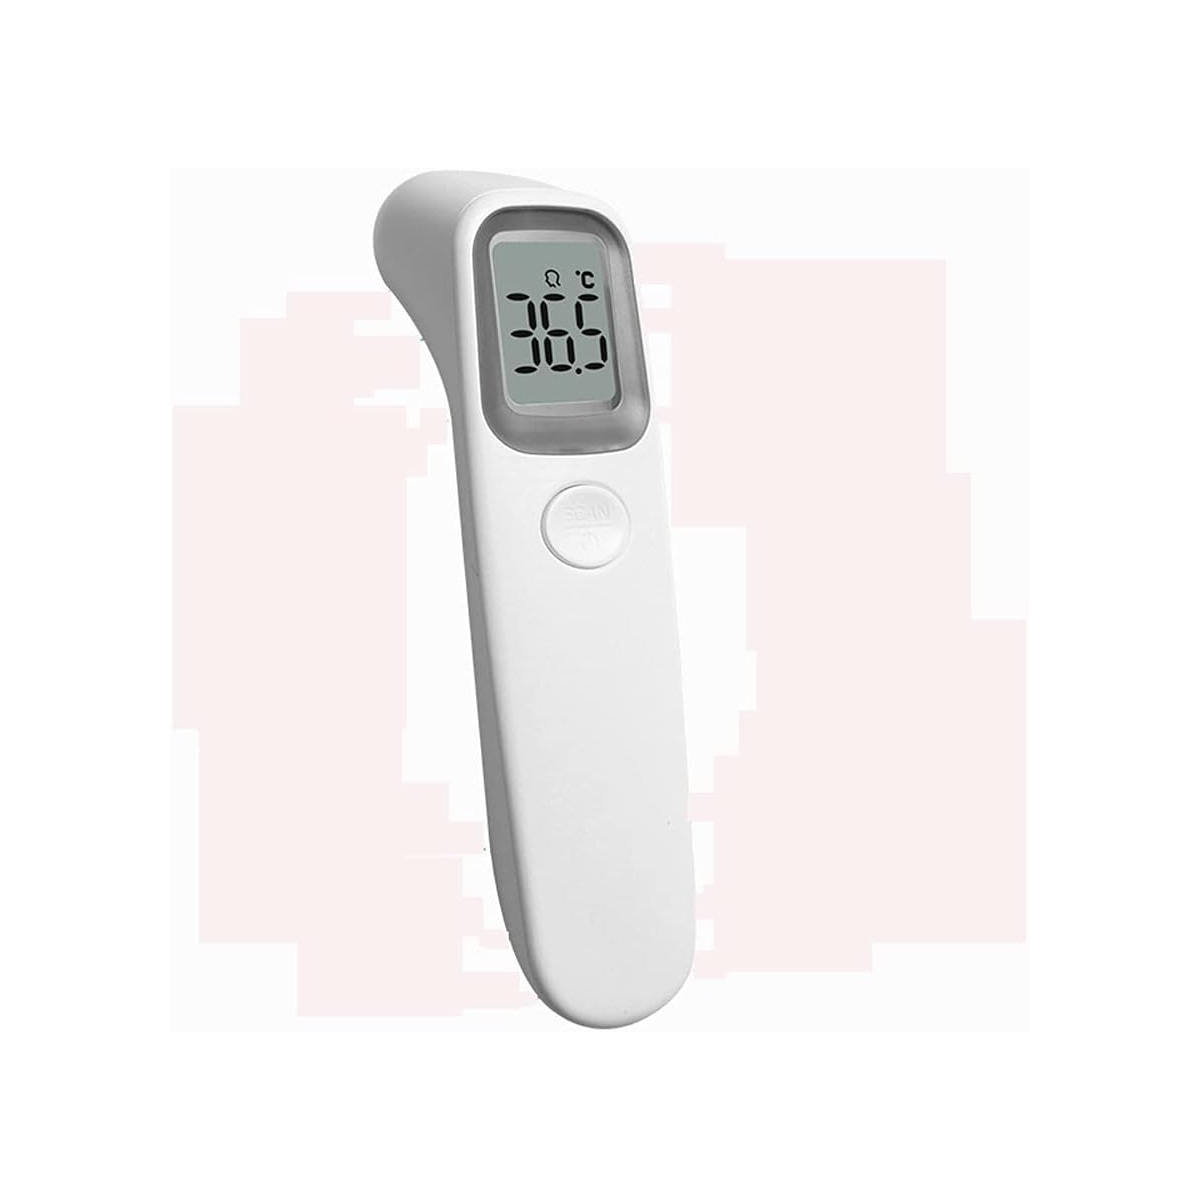 Termómetro Digital Infrarrojo Temperatura Corporal Distancia